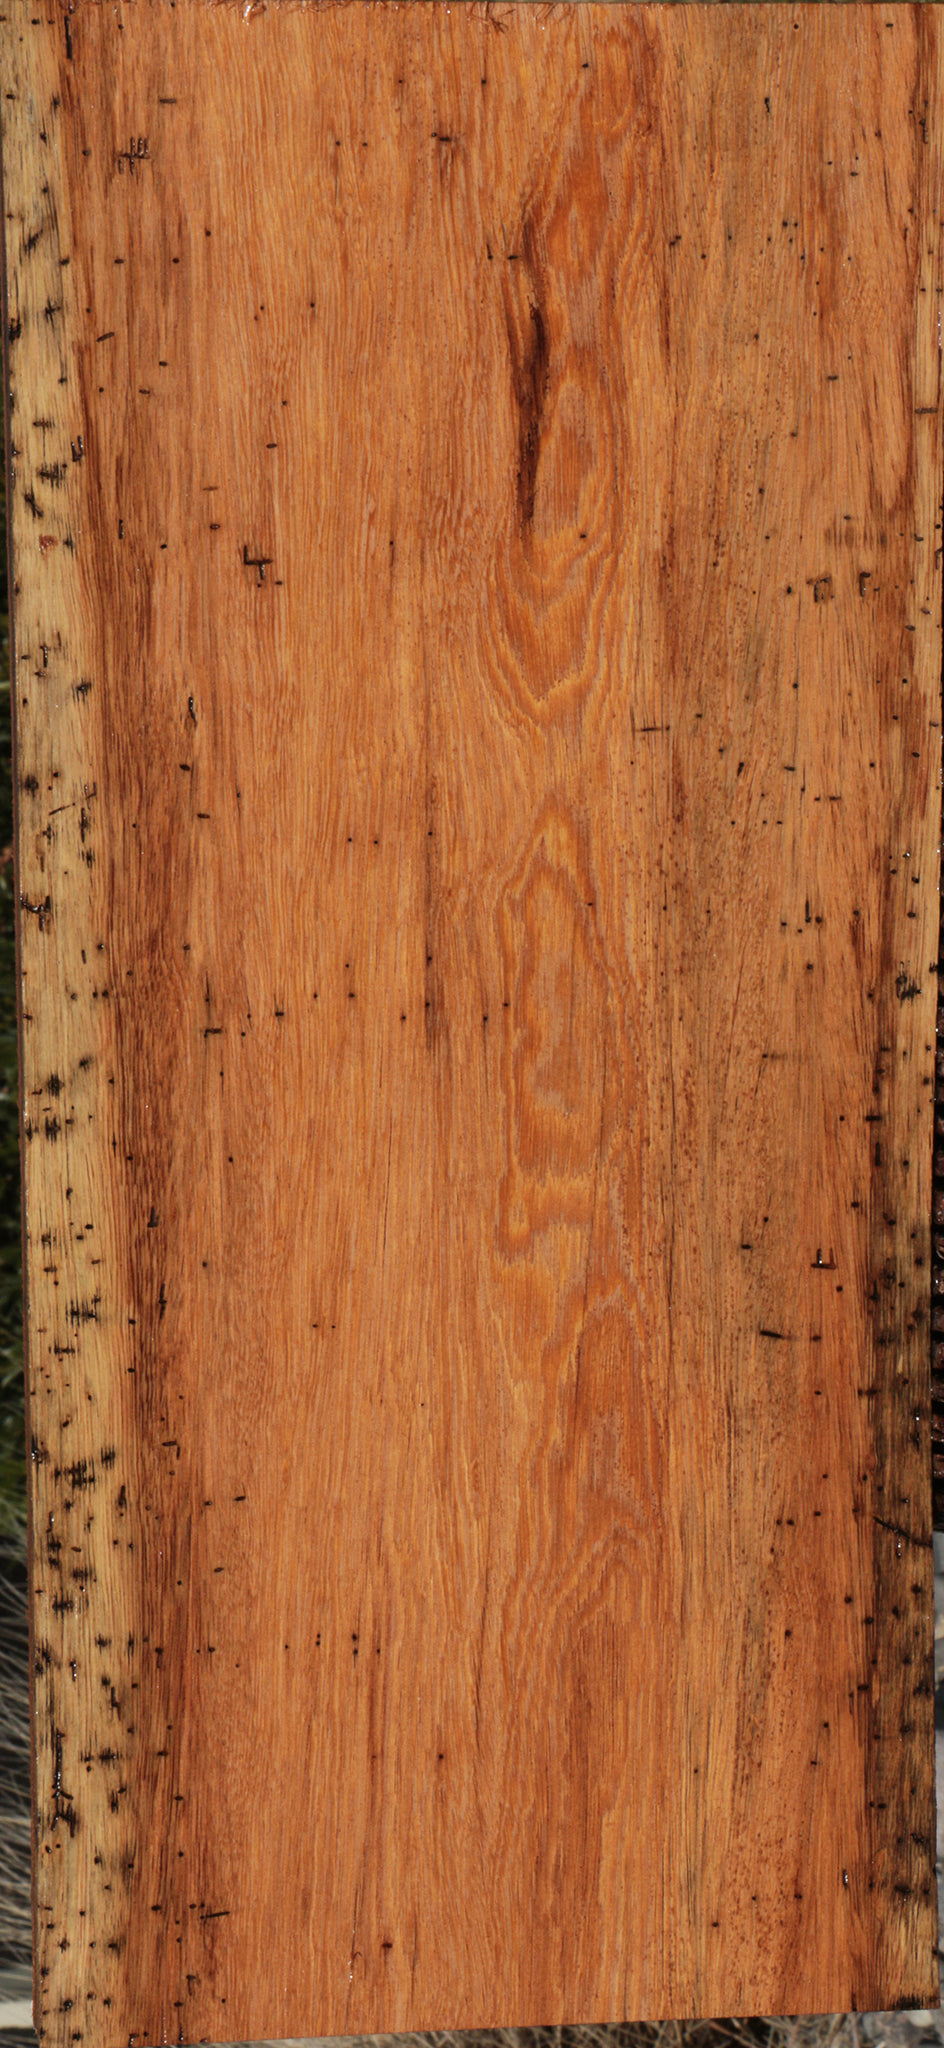 Colorado Manzano Lumber